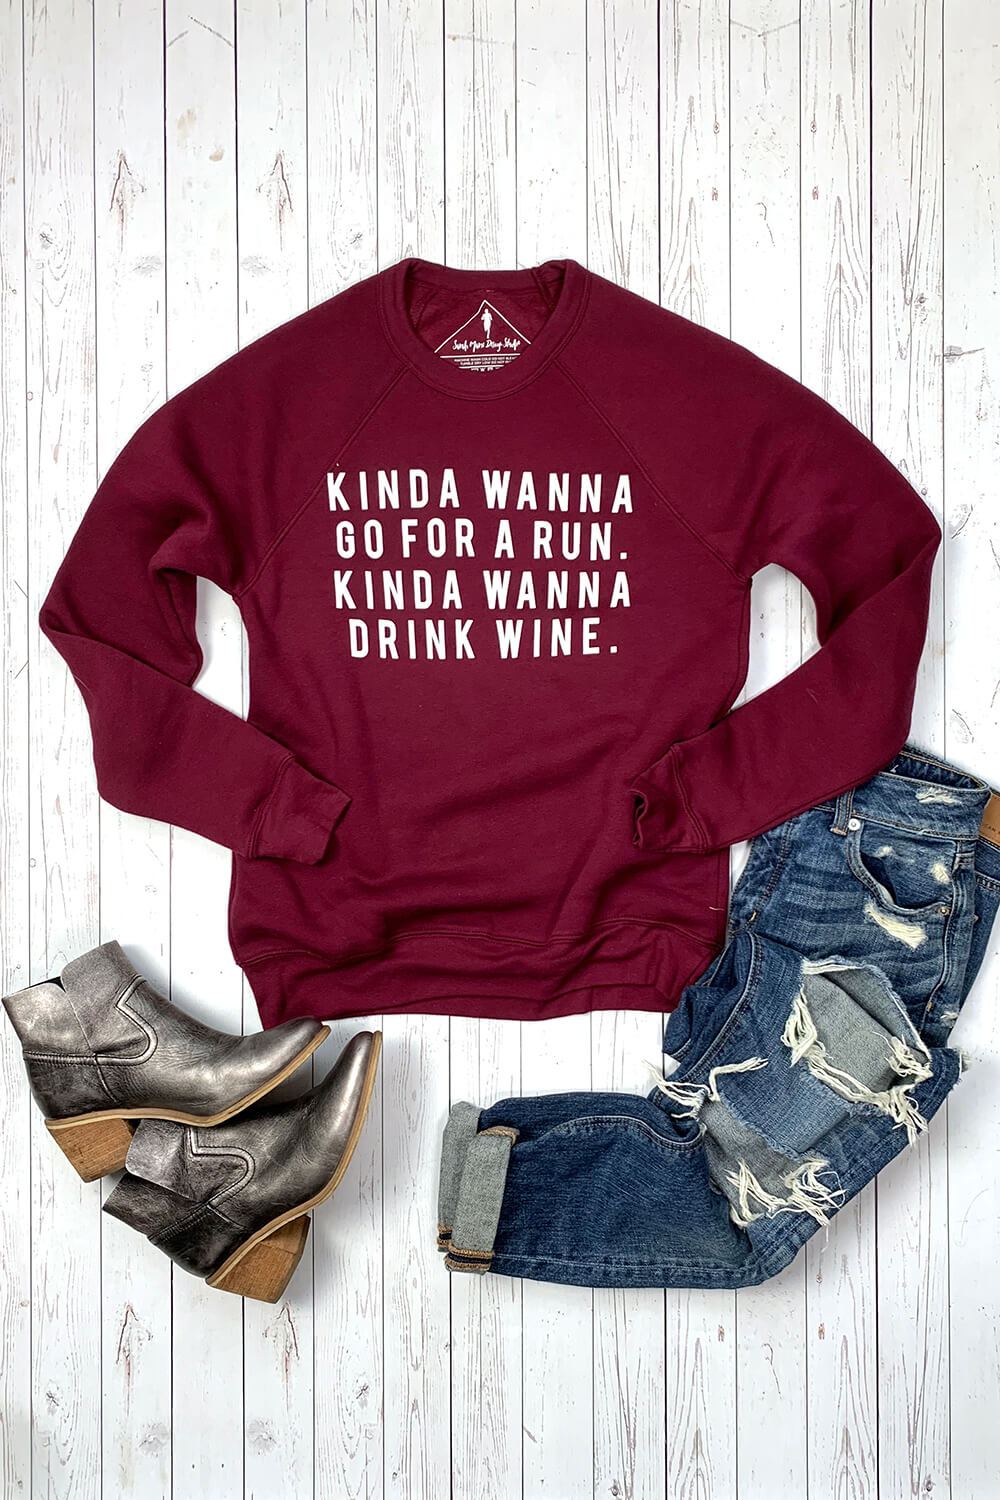 Kinda Wanna Go For a Run, Kinda Wanna Drink Wine Sweatshirt - Sarah Marie Design Studio